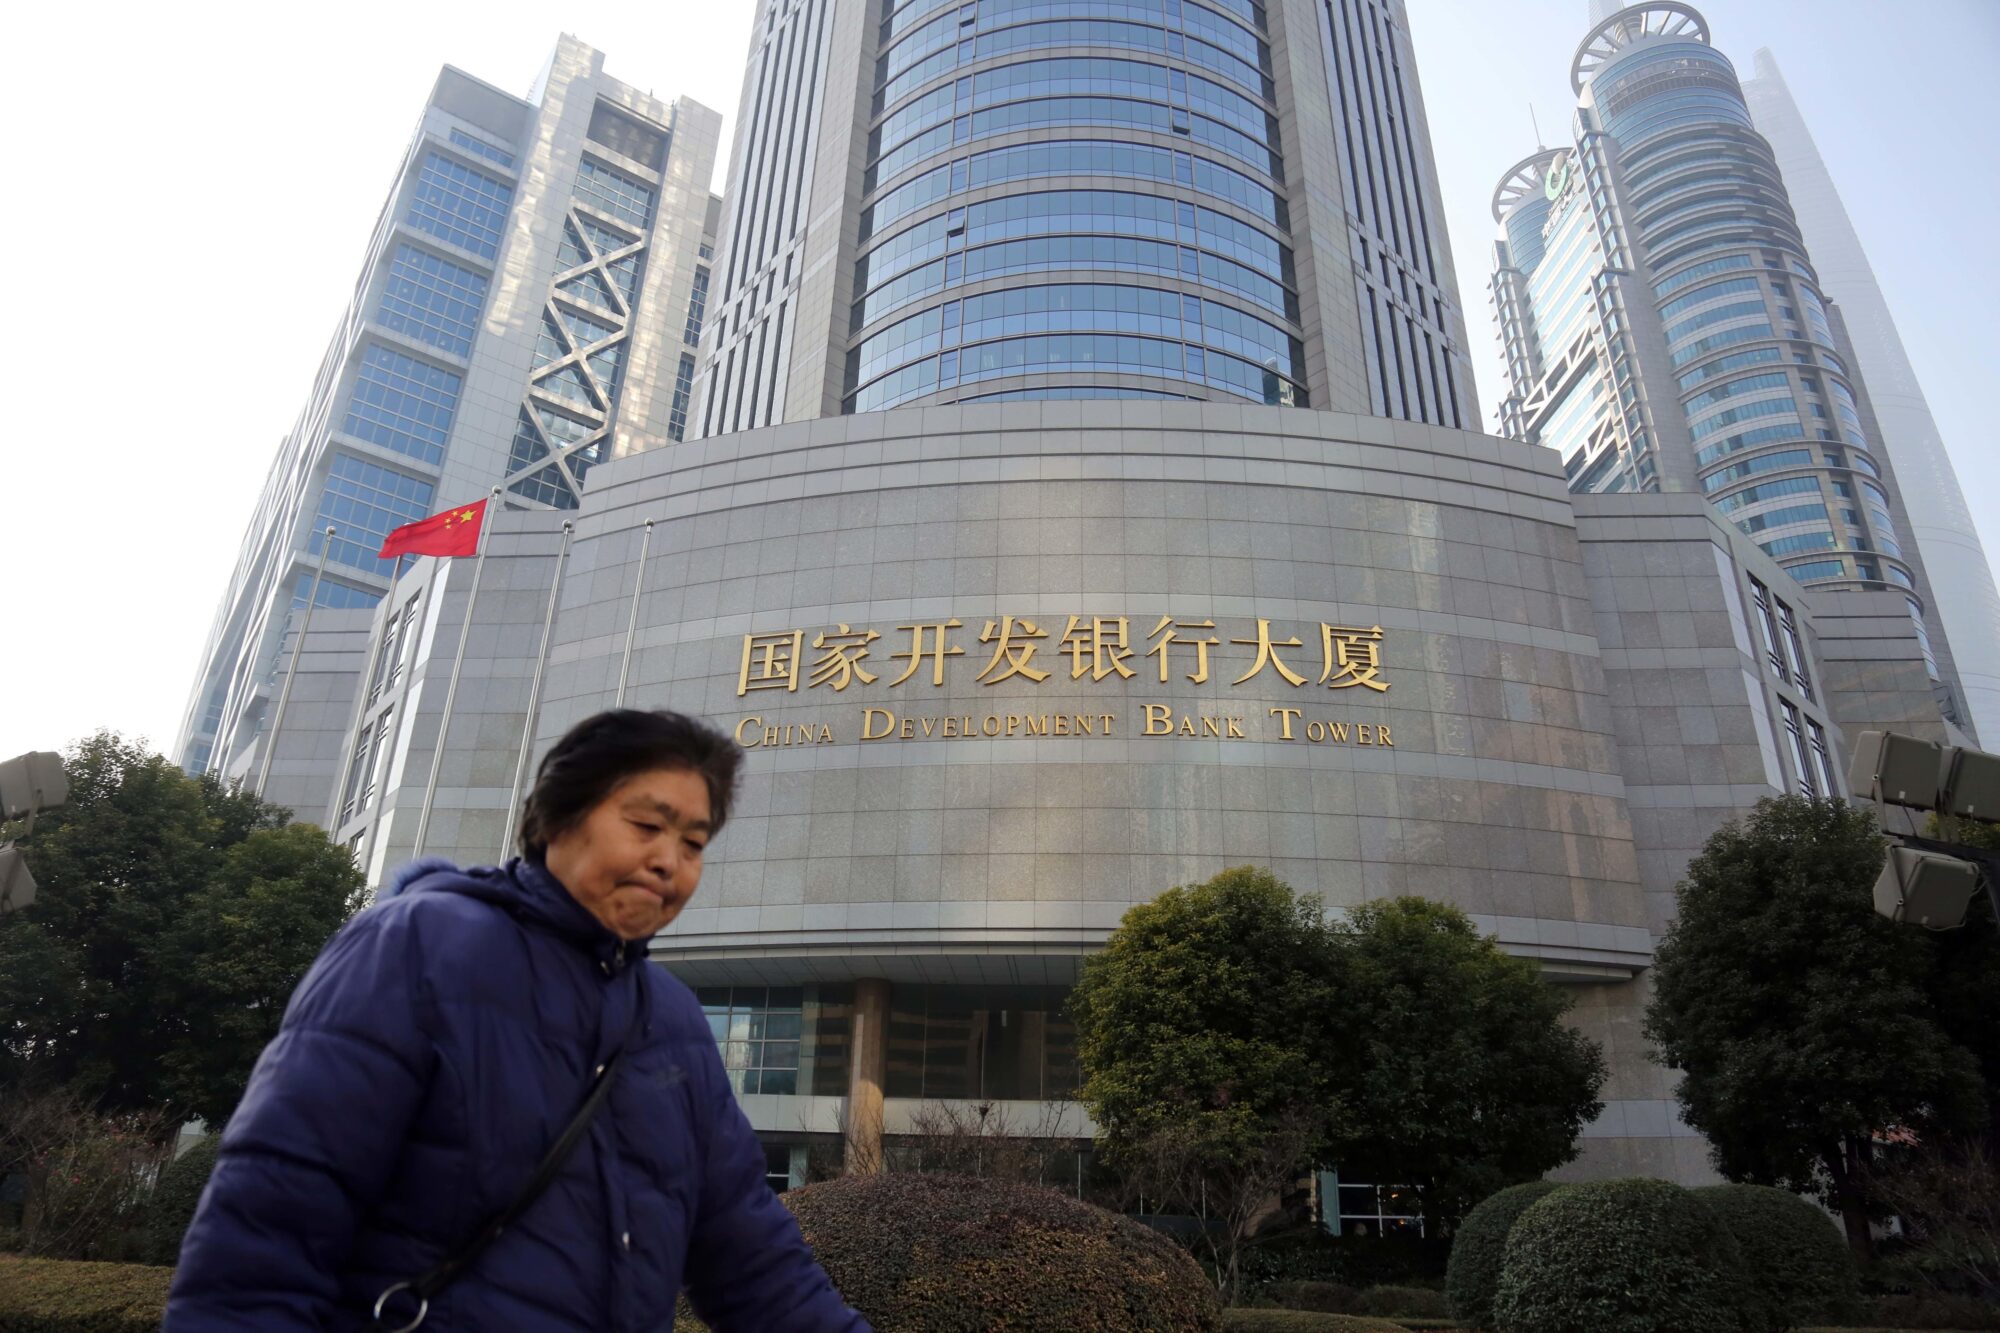 Uma mulher caminhando em frente ao prédio do China Development Bank.